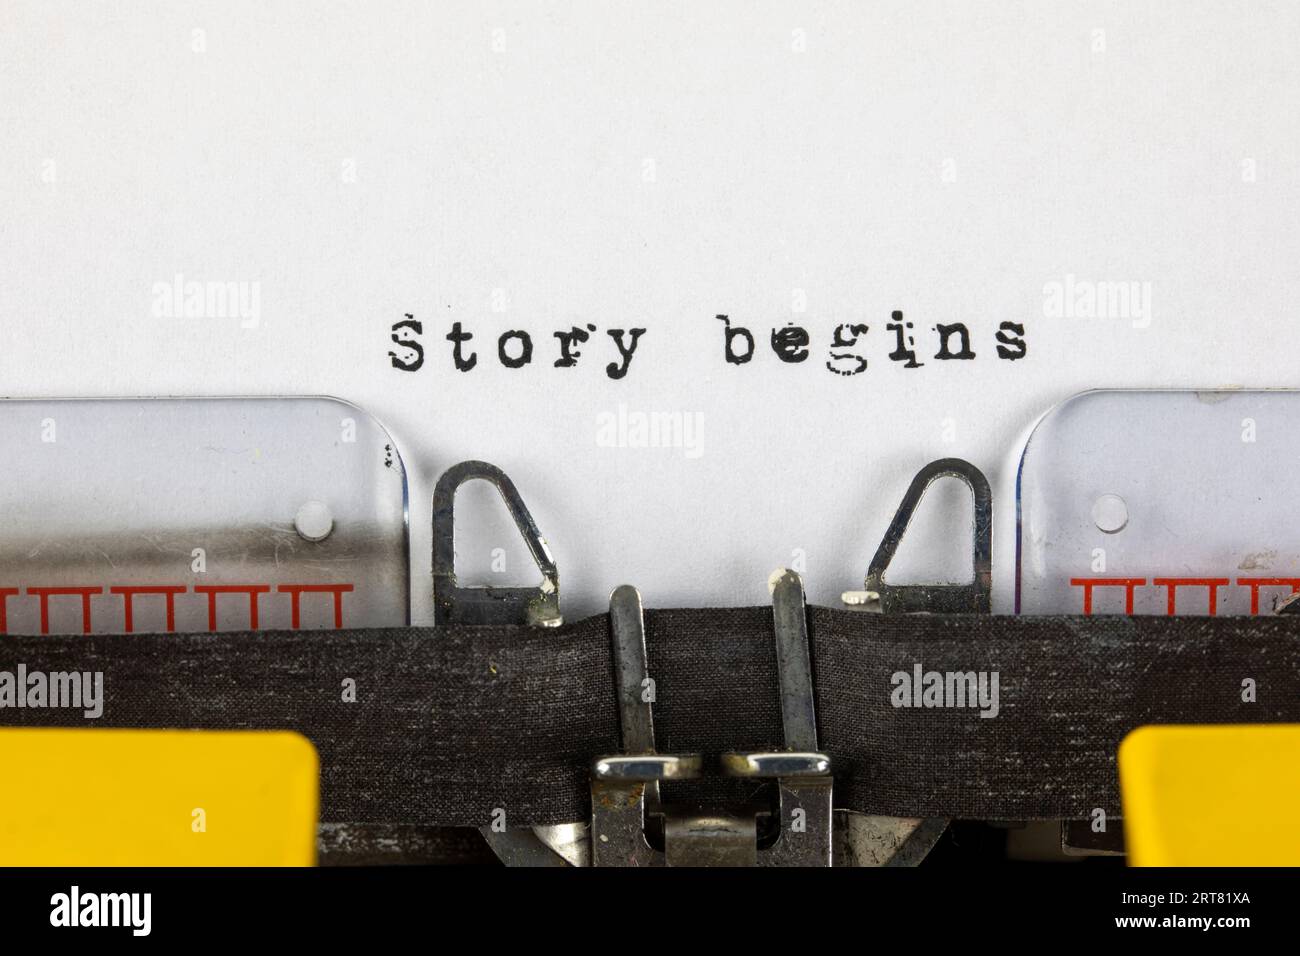 La historia comienza - escrito en una vieja máquina de escribir Foto de stock